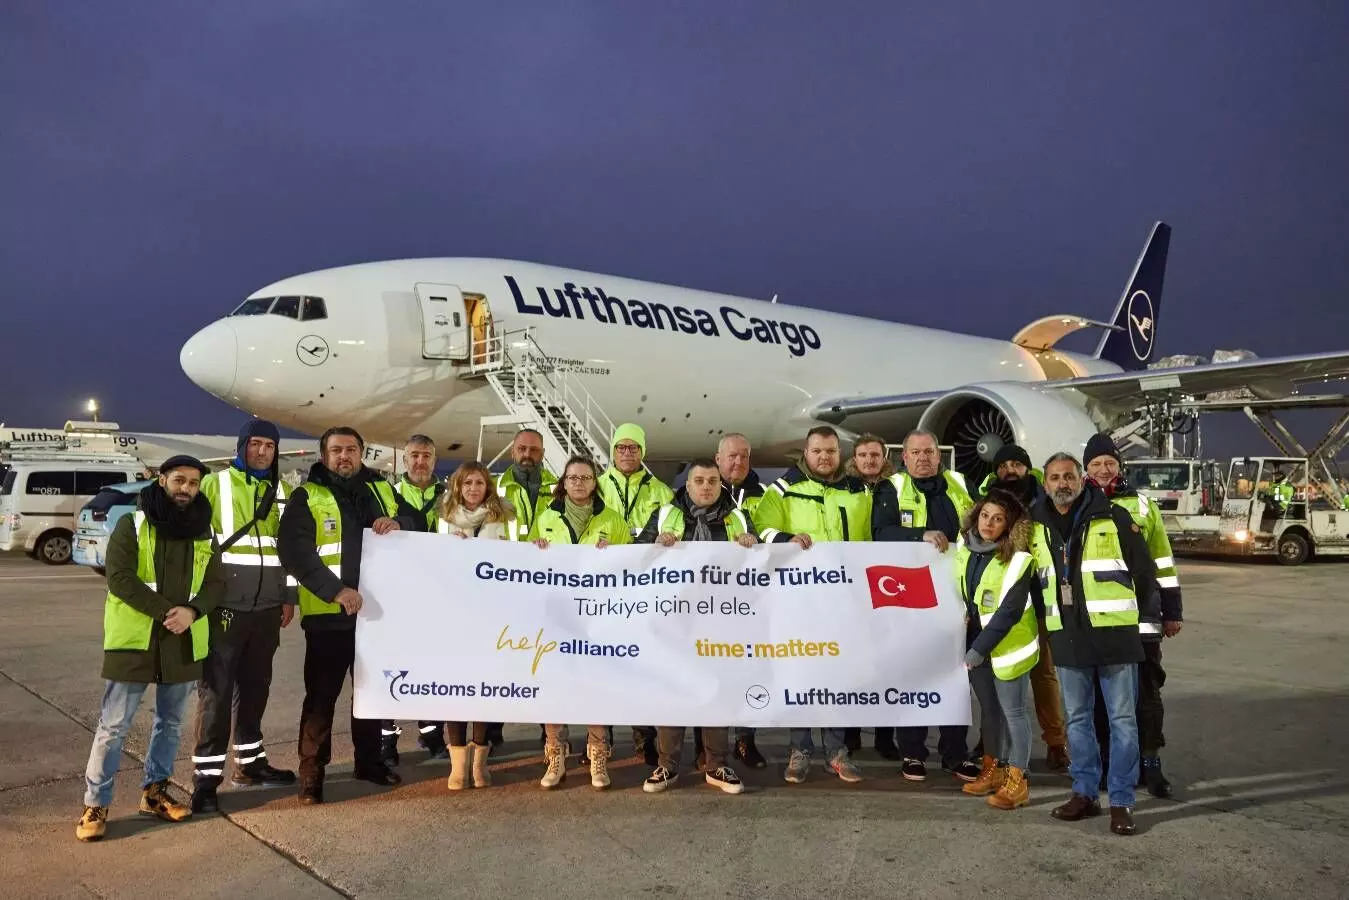 Lufthansa Cargo flies relief supplies to Turkey